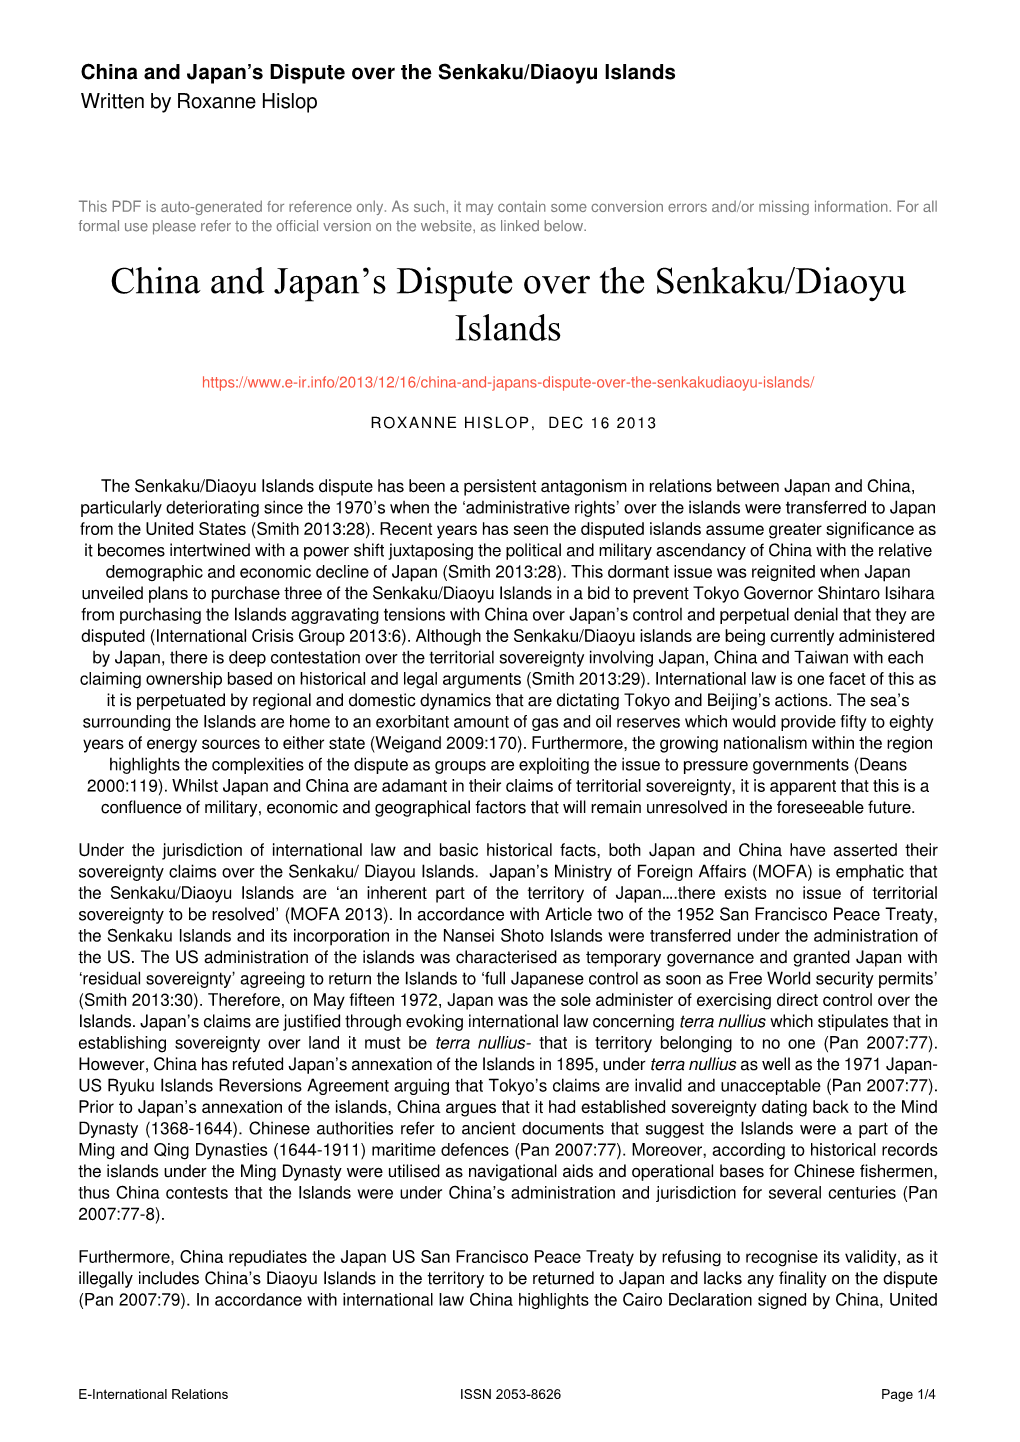 China and Japan's Dispute Over the Senkaku/Diaoyu Islands